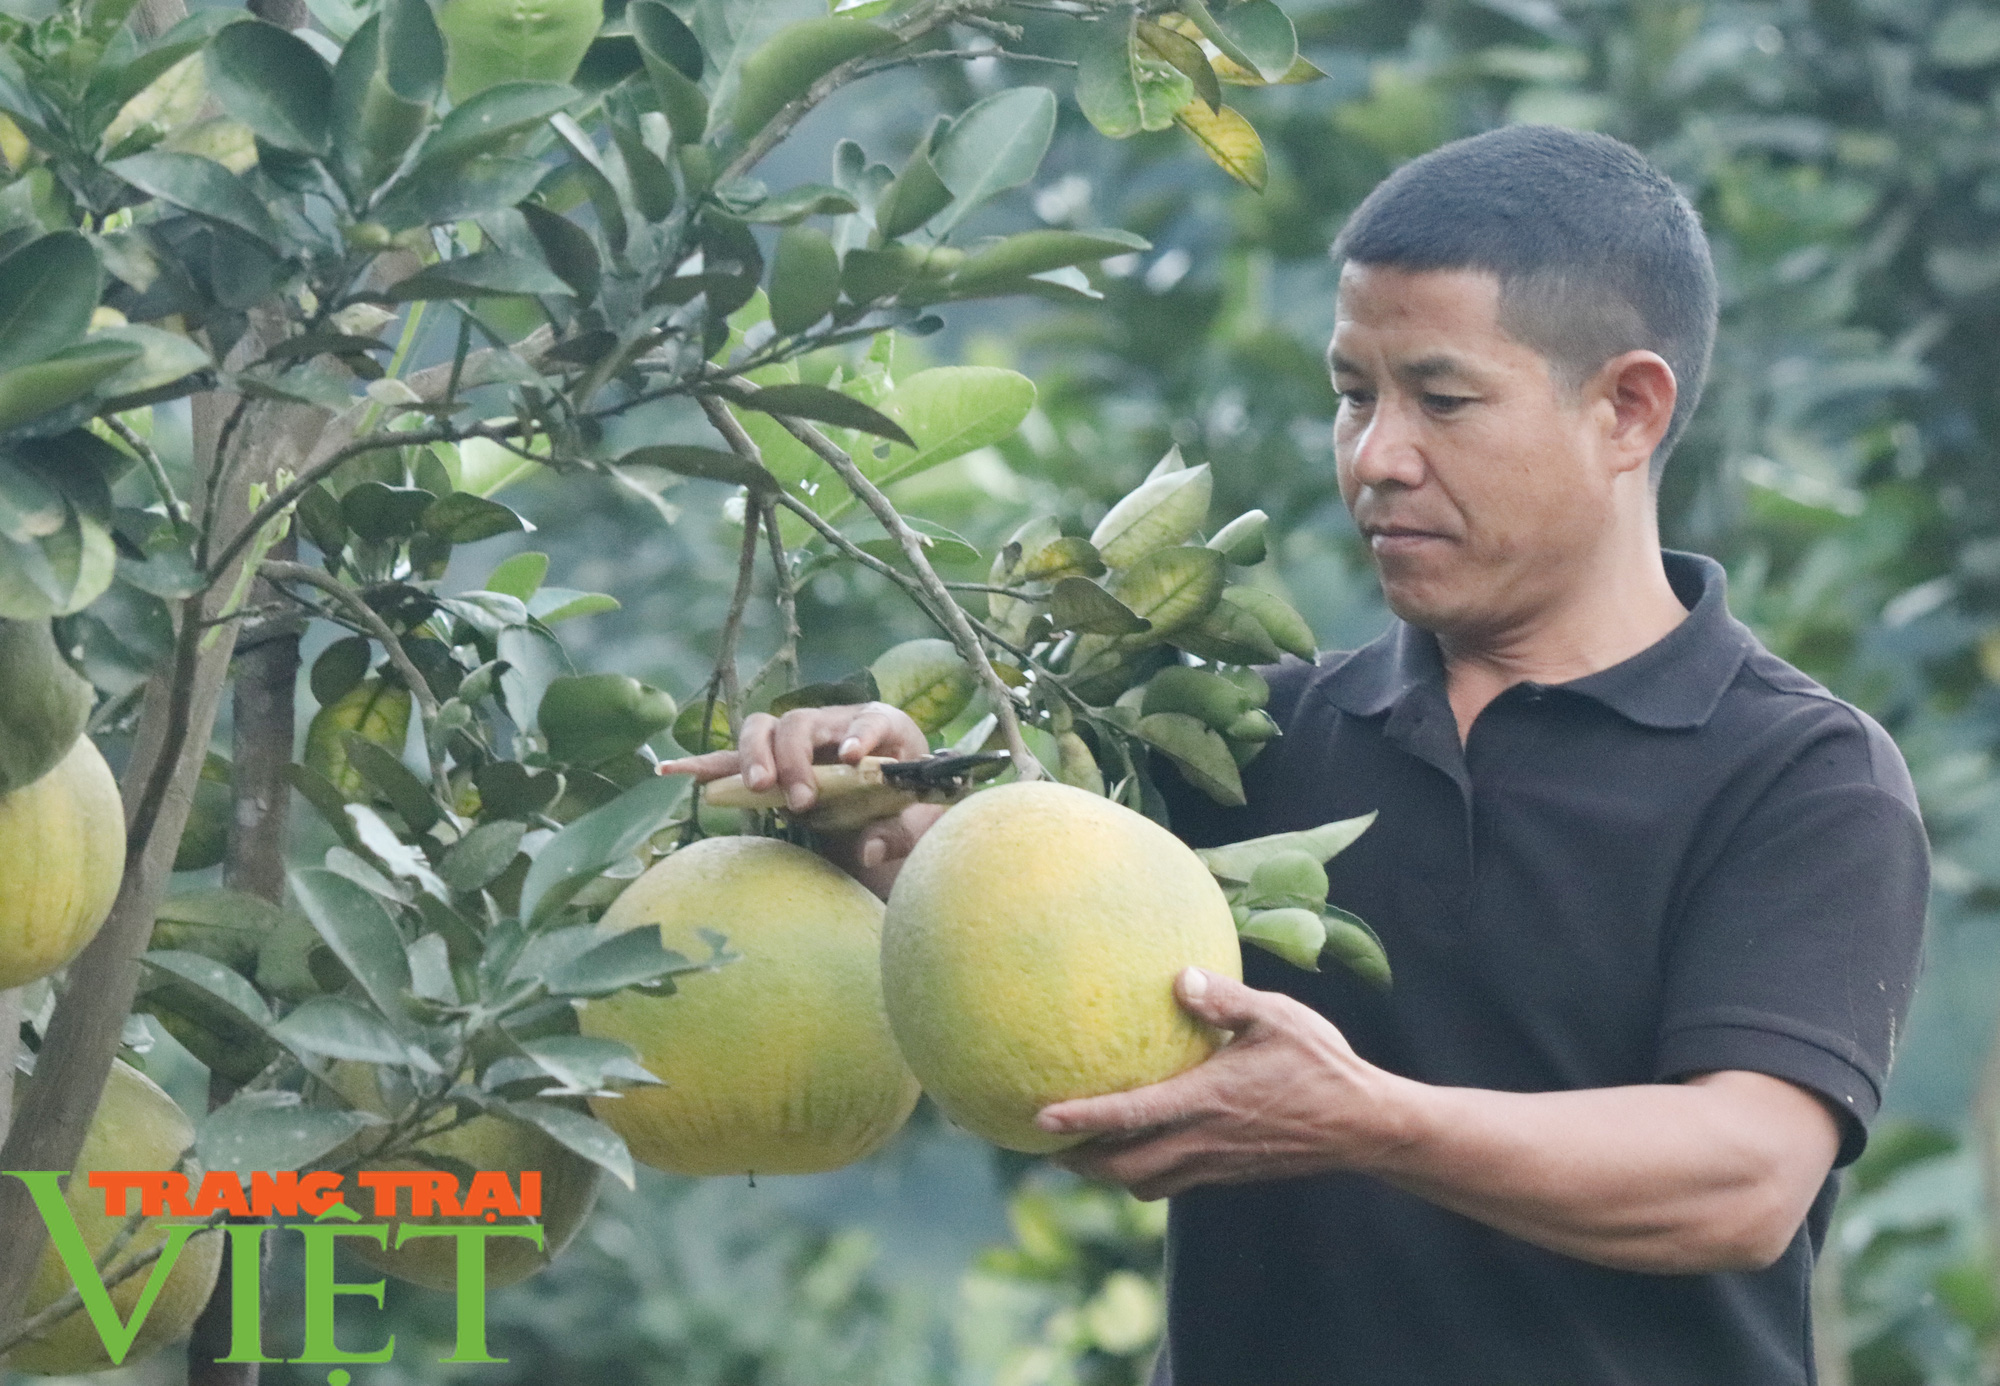 HTX Nông nghiệp Duy Lợi trồng cây ăn quả theo tiêu chuẩn VietGAP - Ảnh 3.